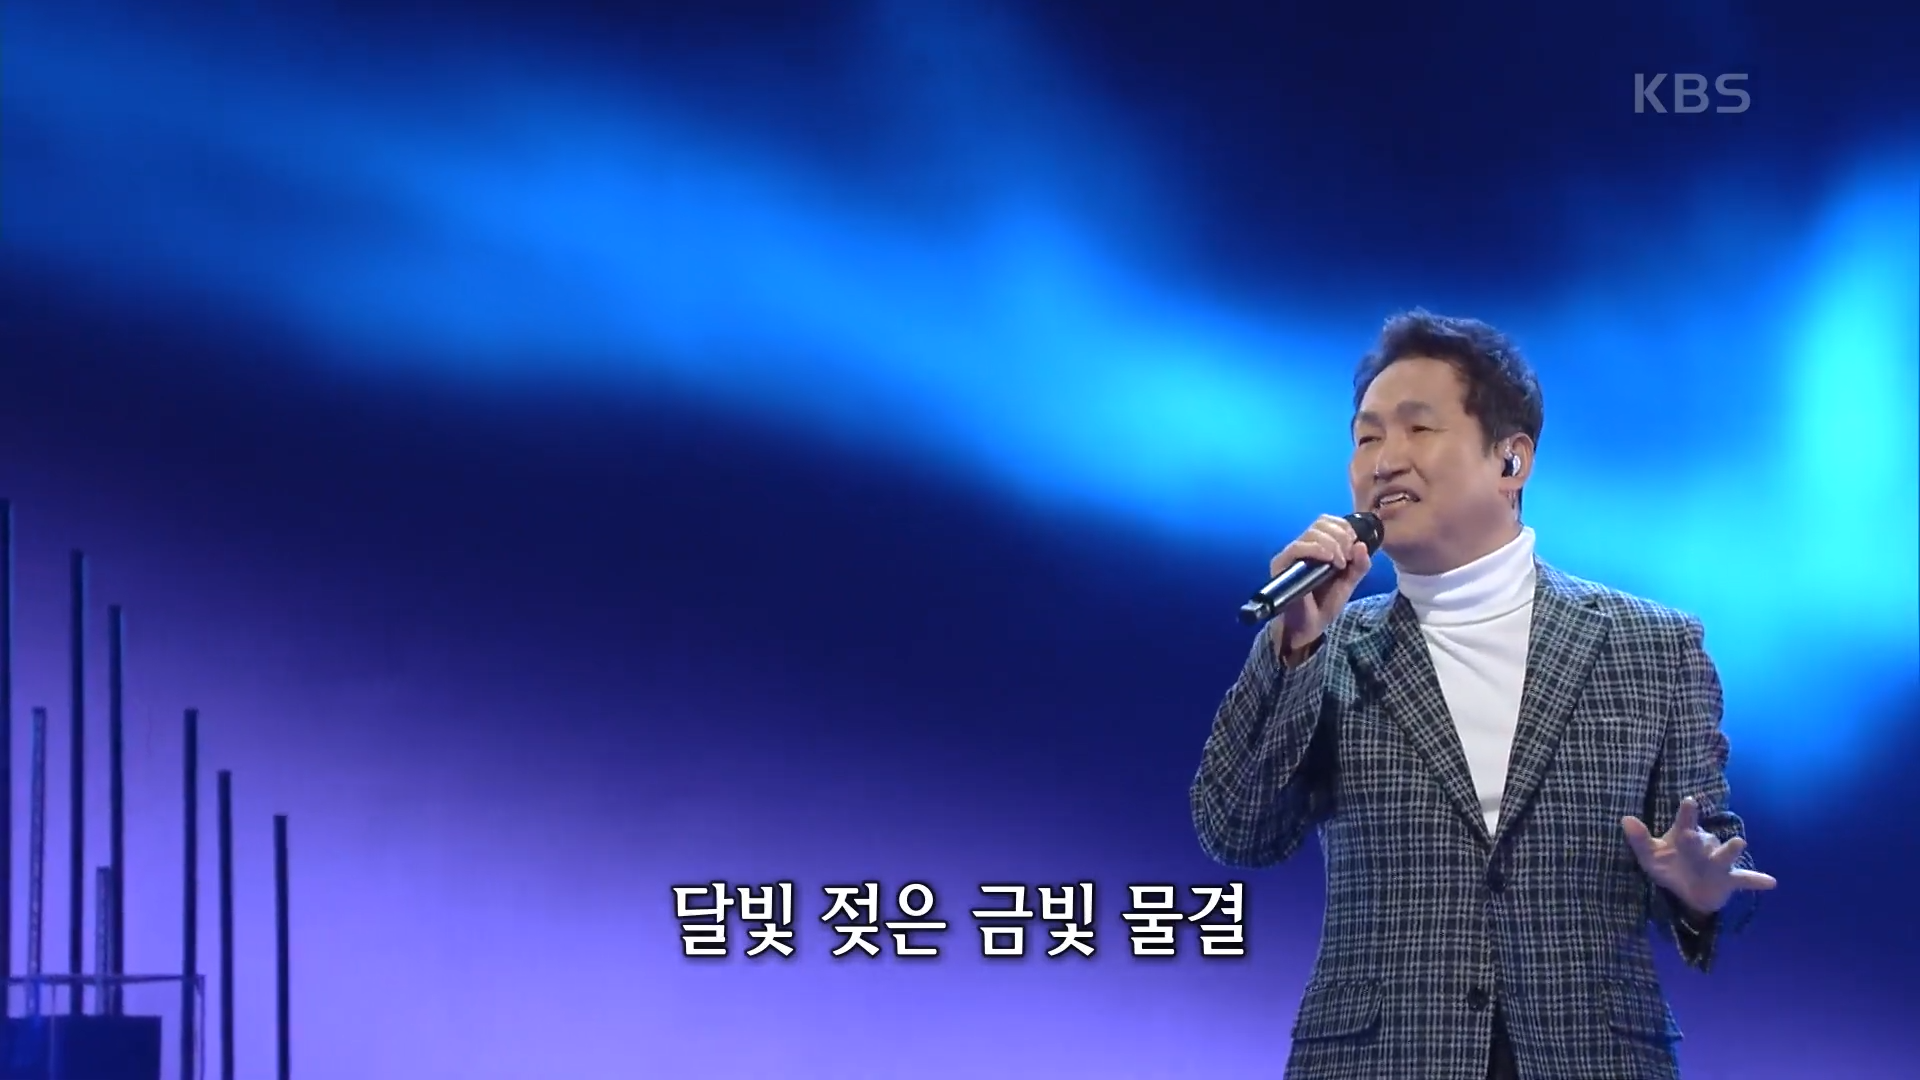 김범룡 - 이름 모를 소녀 [가요무대/Music Stage] &#124; KBS 210222 방송